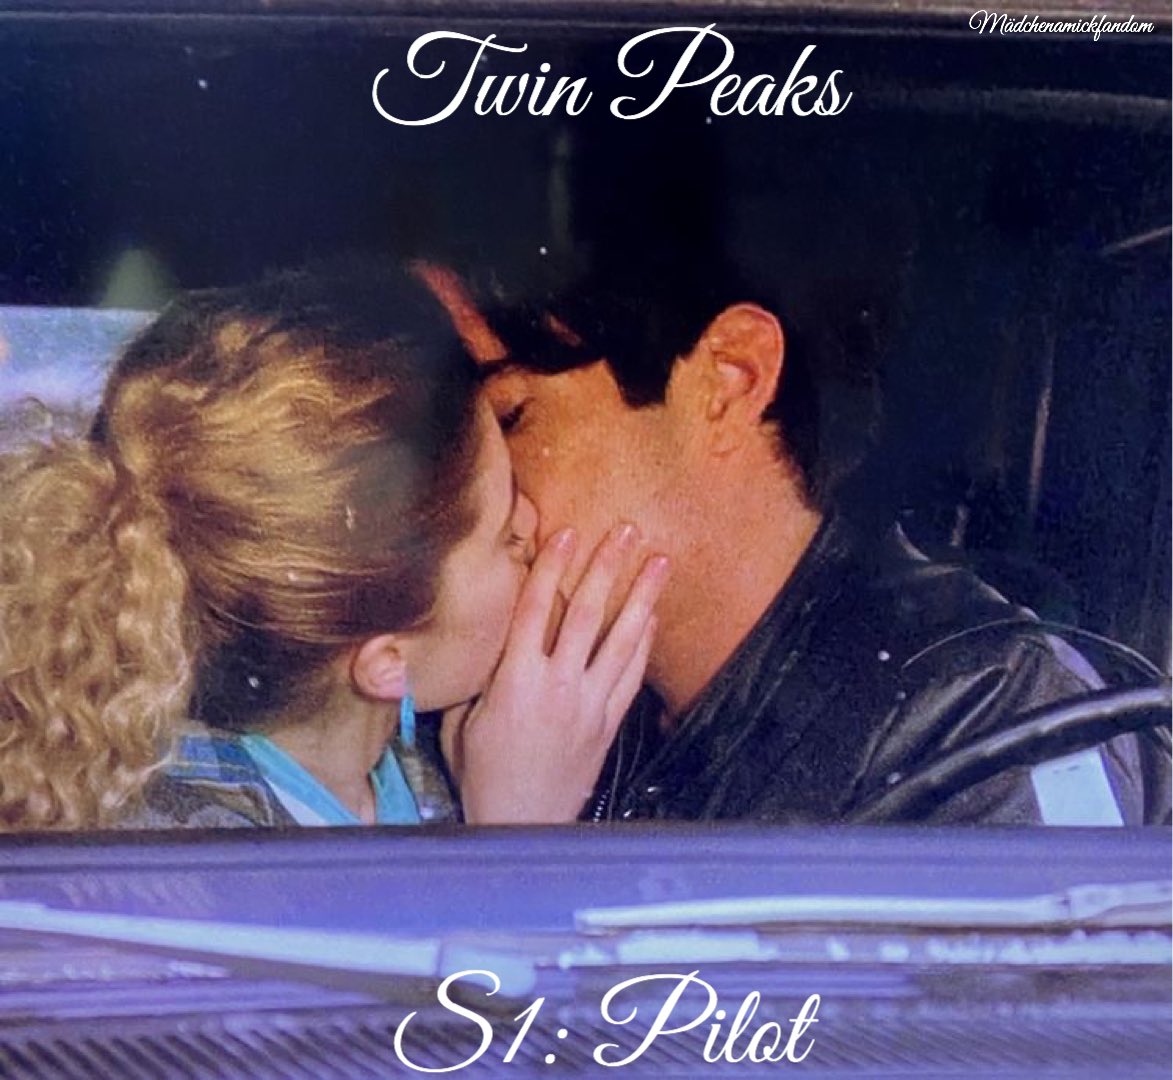 Twin Peaks S1: Fan edits  #madchenamick  #shellyjohnson  #twinpeaks  #fanedits  @madchenamick